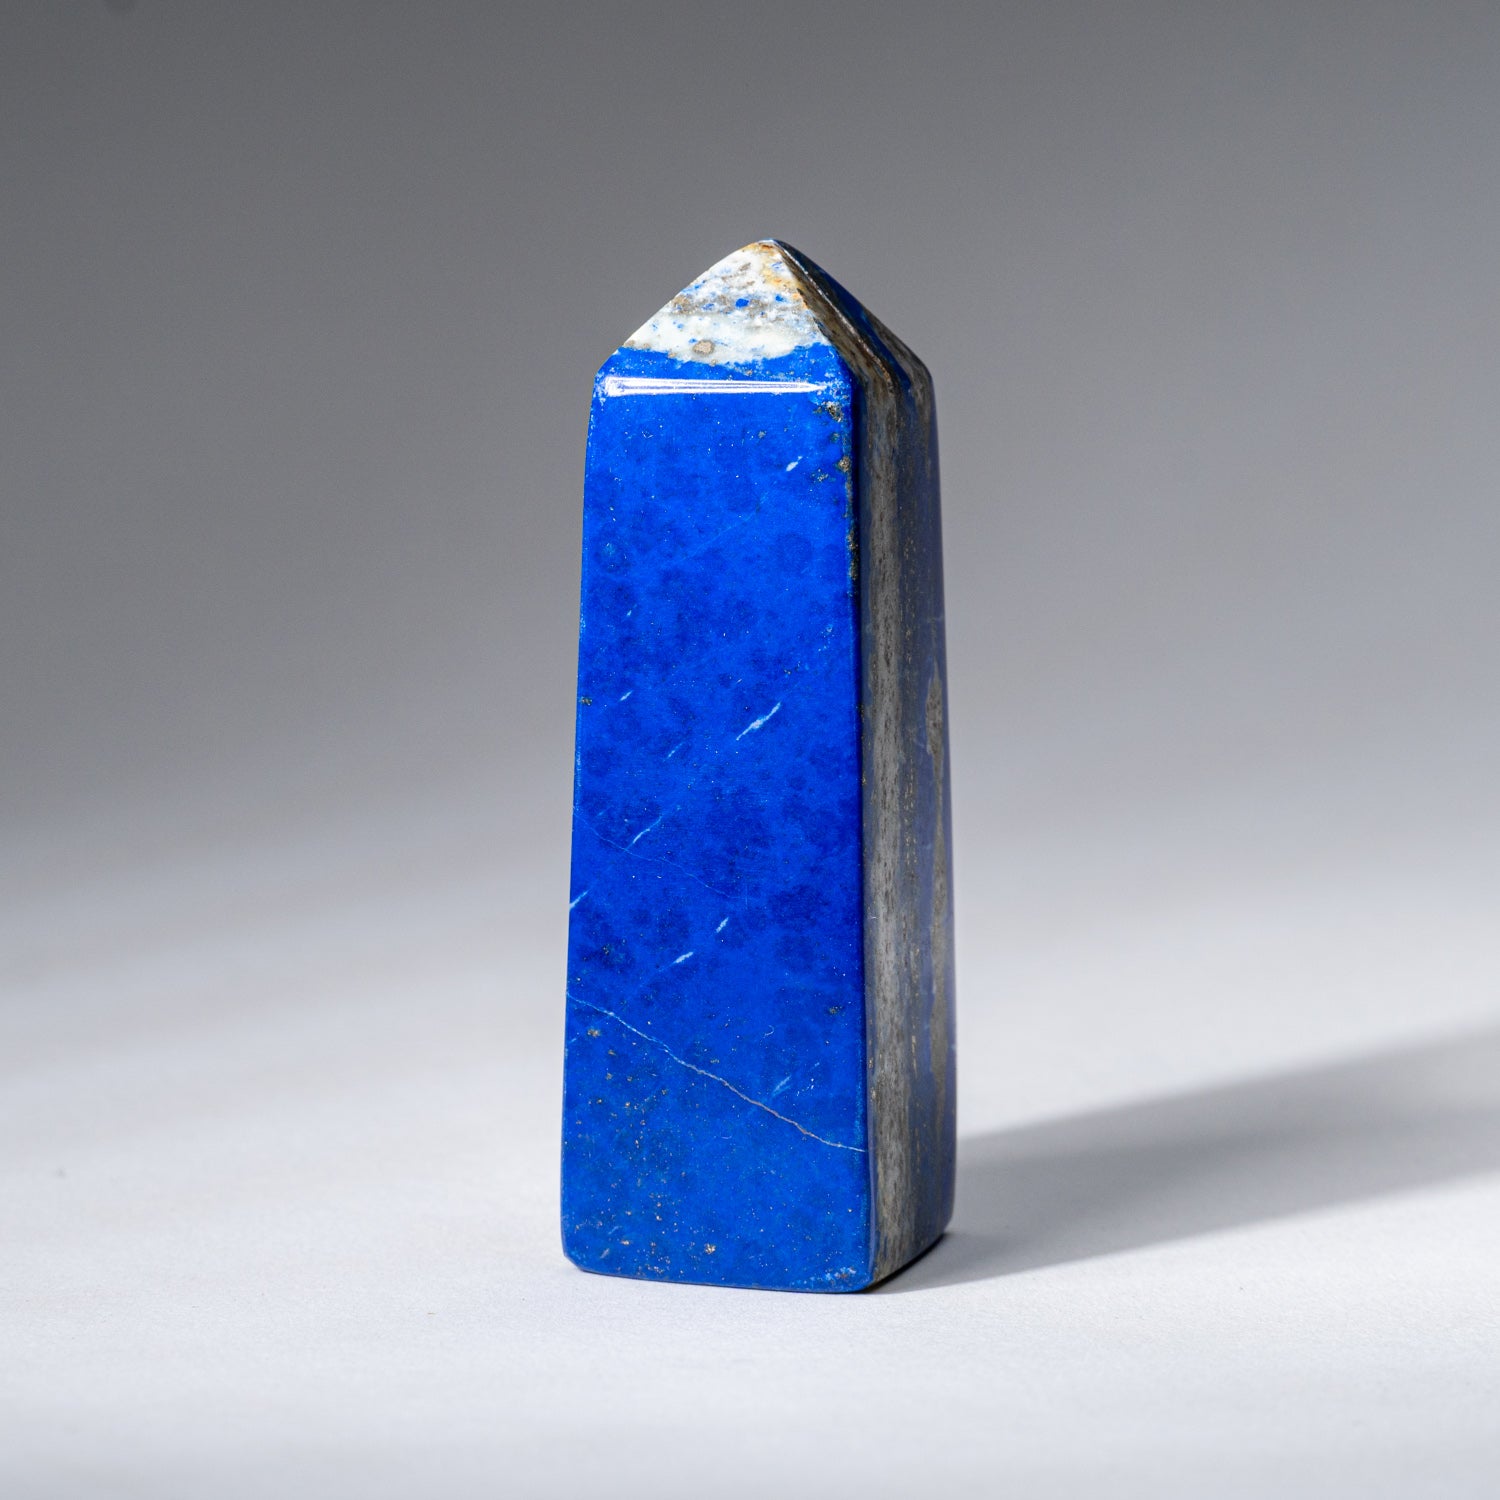 Polished Lapis Lazuli Obelisk from Afghanistan (130.6 grams)